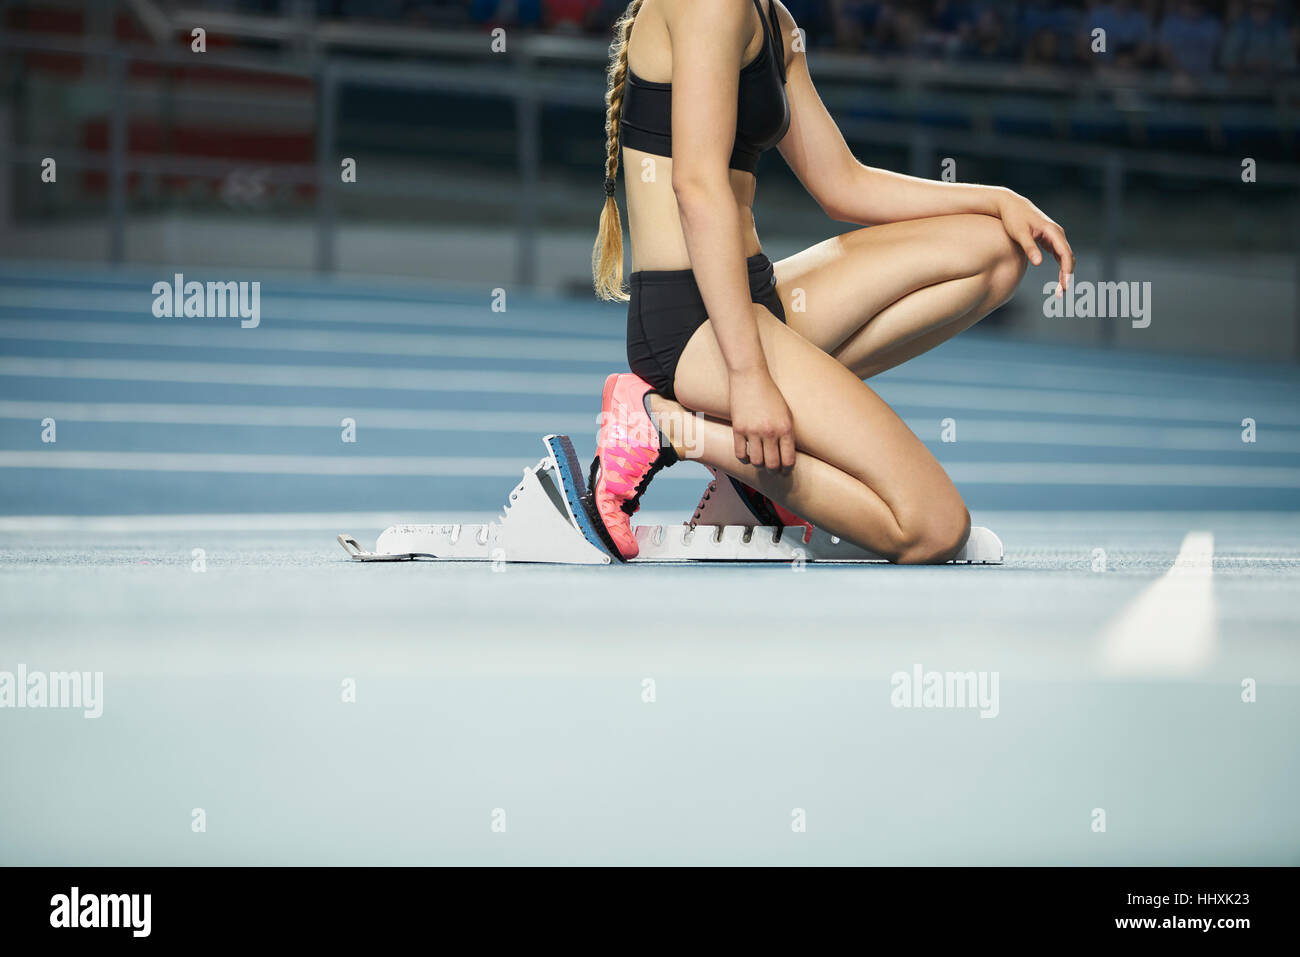 Female runner kneeling at starting block on sports track Stock Photo